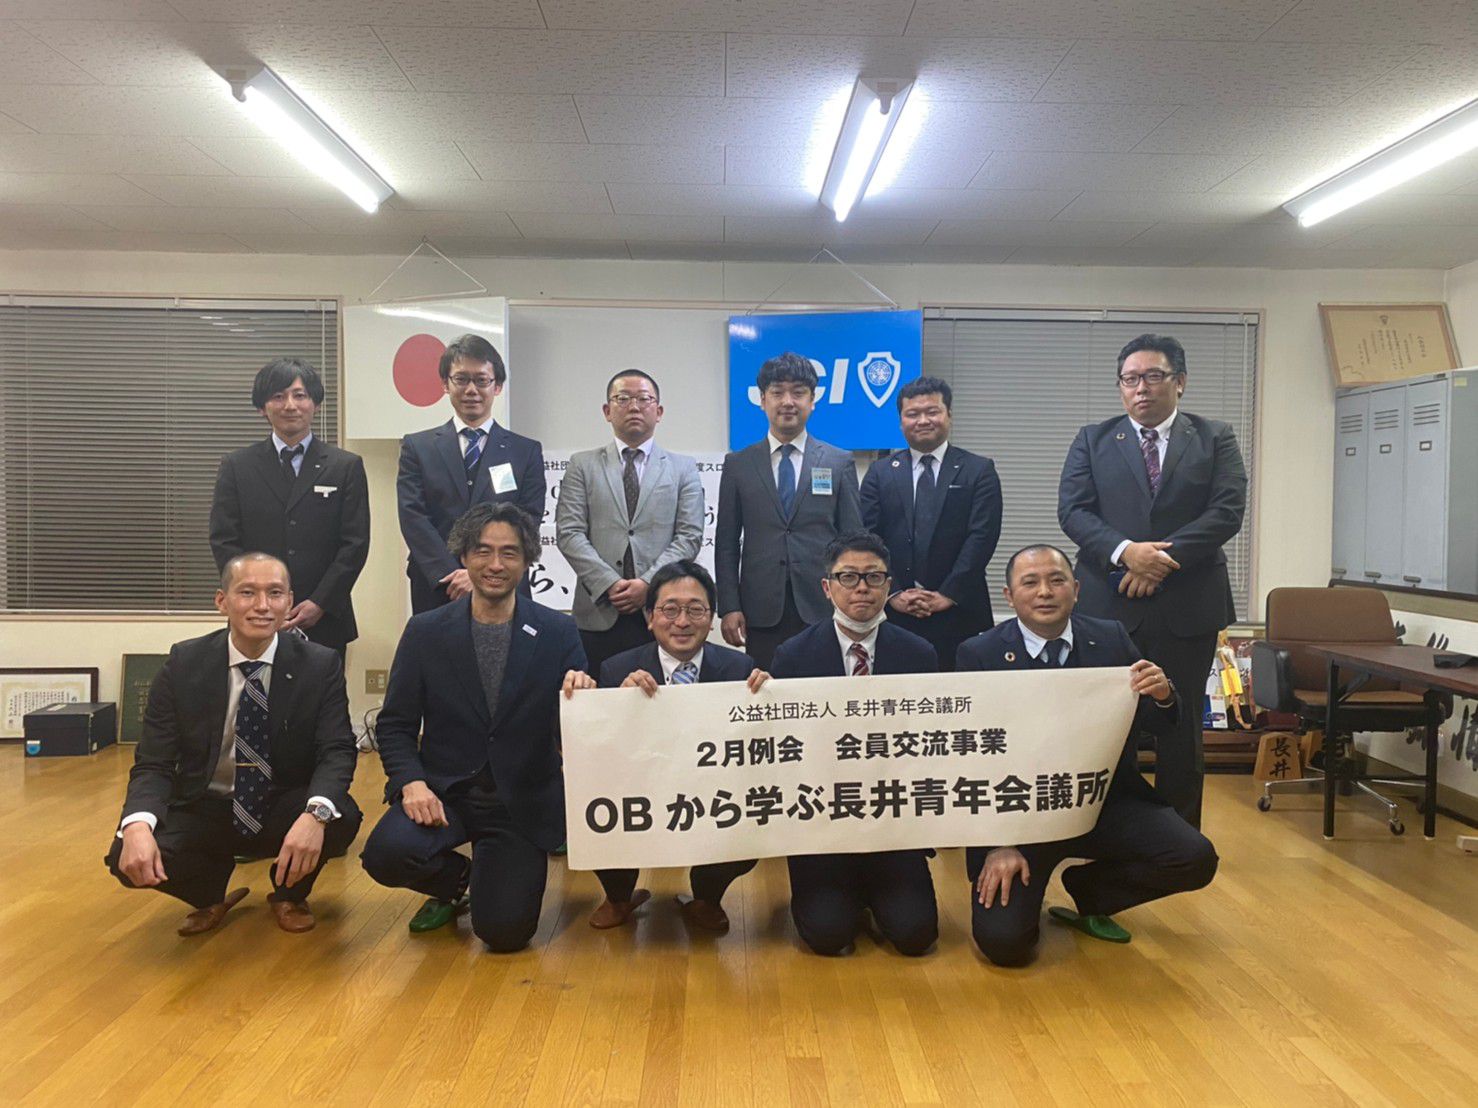 2月例会会員交流事業「OBから学ぶ長井青年会議所」を開催いたしました。